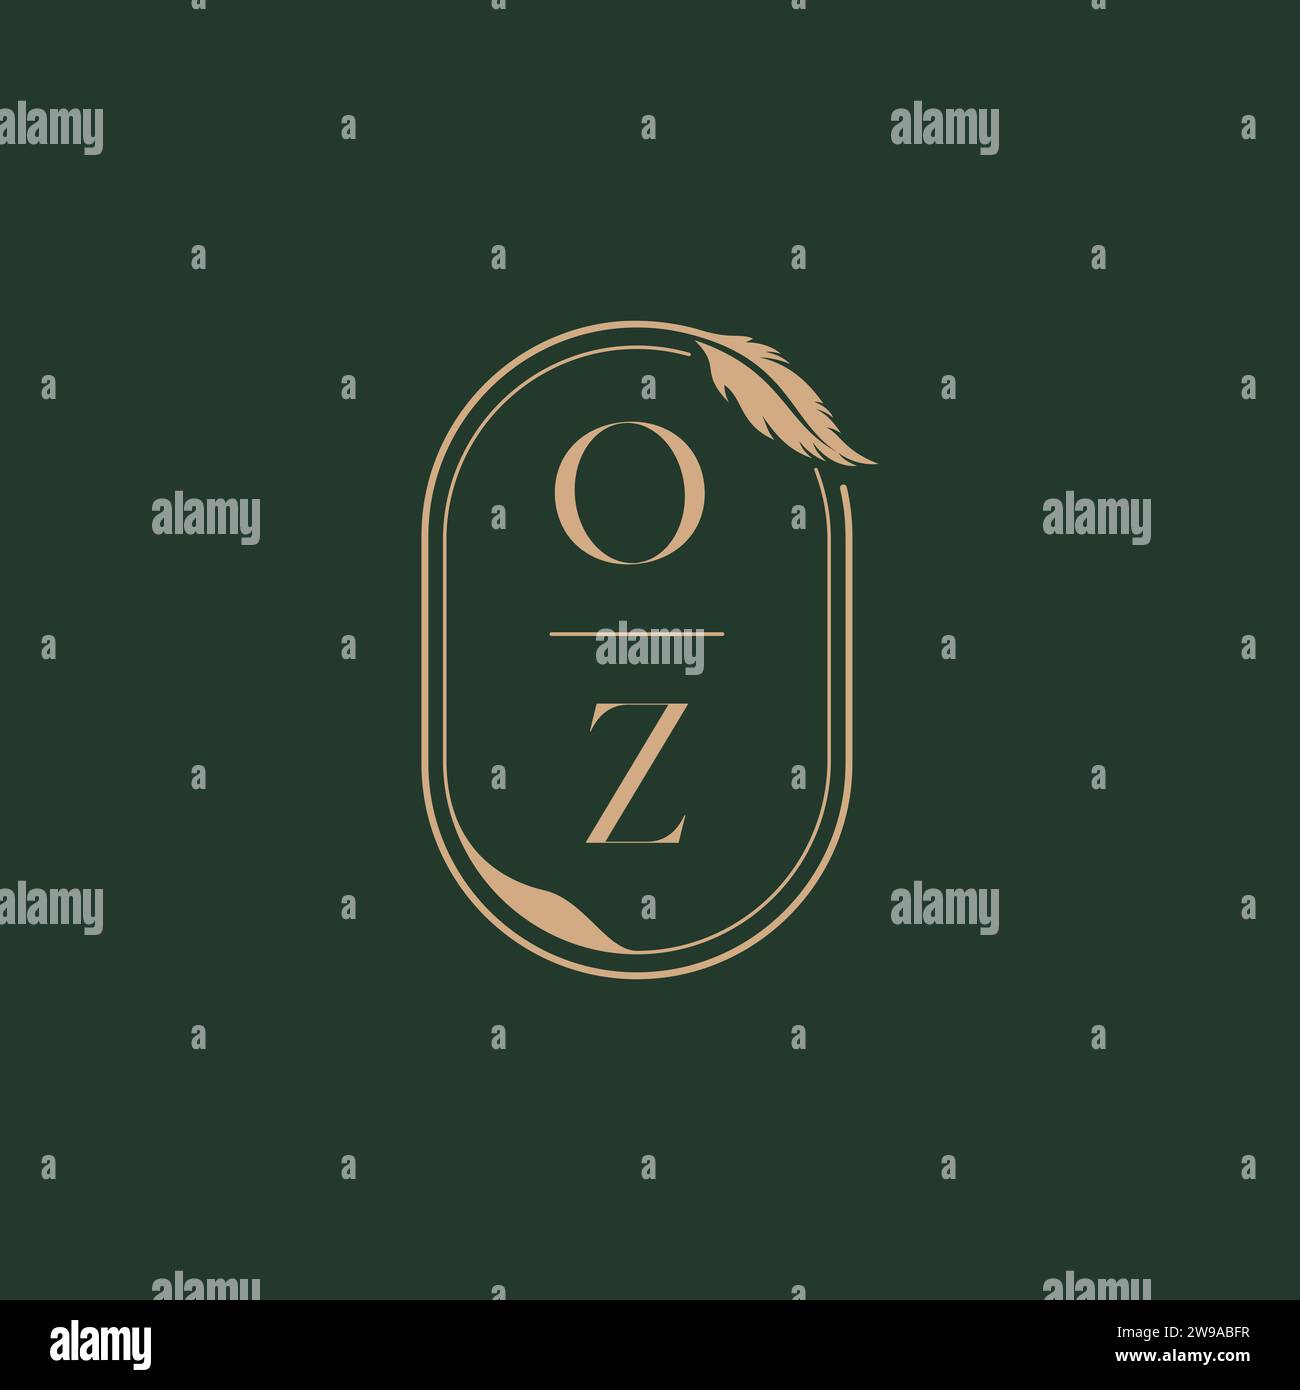 OZ feather concept wedding monogram logo design ideas as inspiration Stock Vector